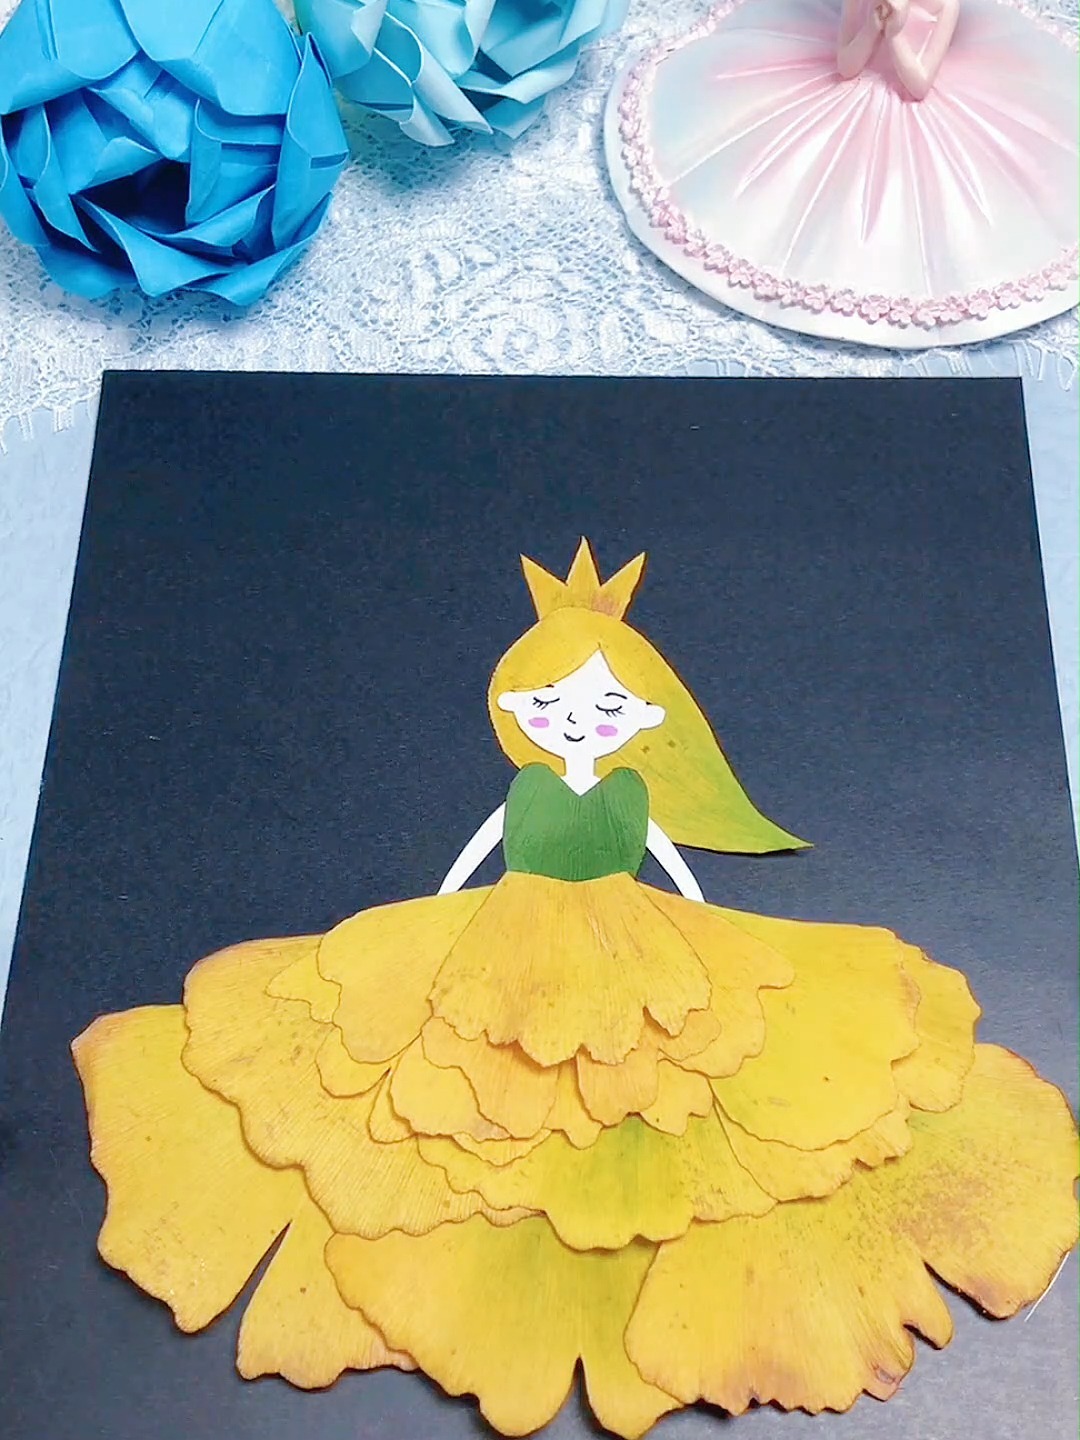 超级漂亮的小公主树叶贴画,赶快收藏起来!